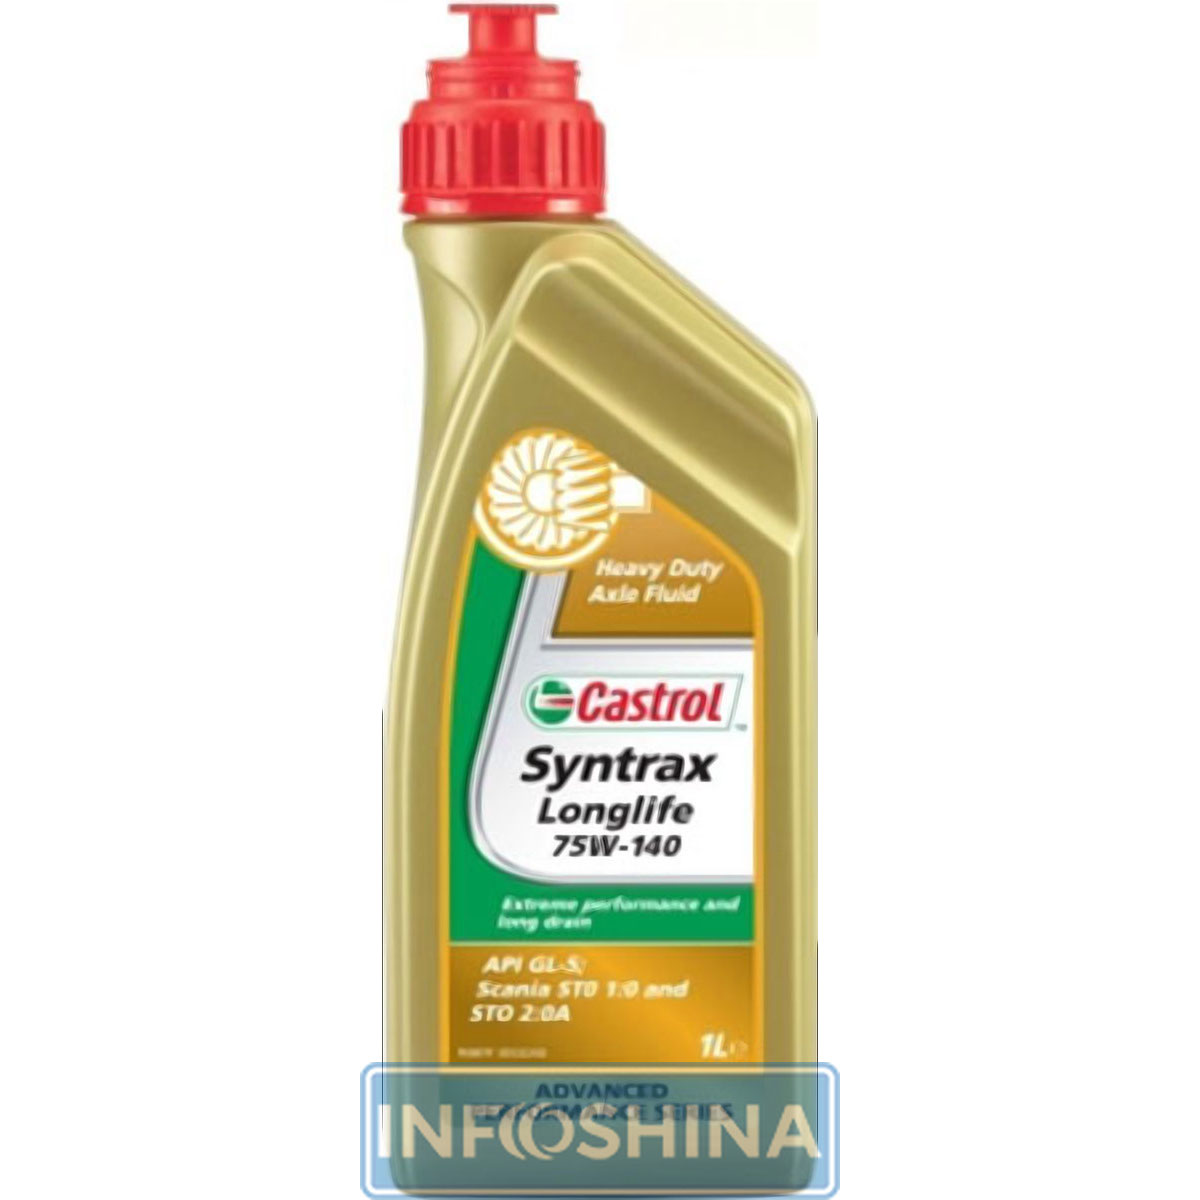 Купить масло Castrol Syntrax Longlife 75W-140 (1л)